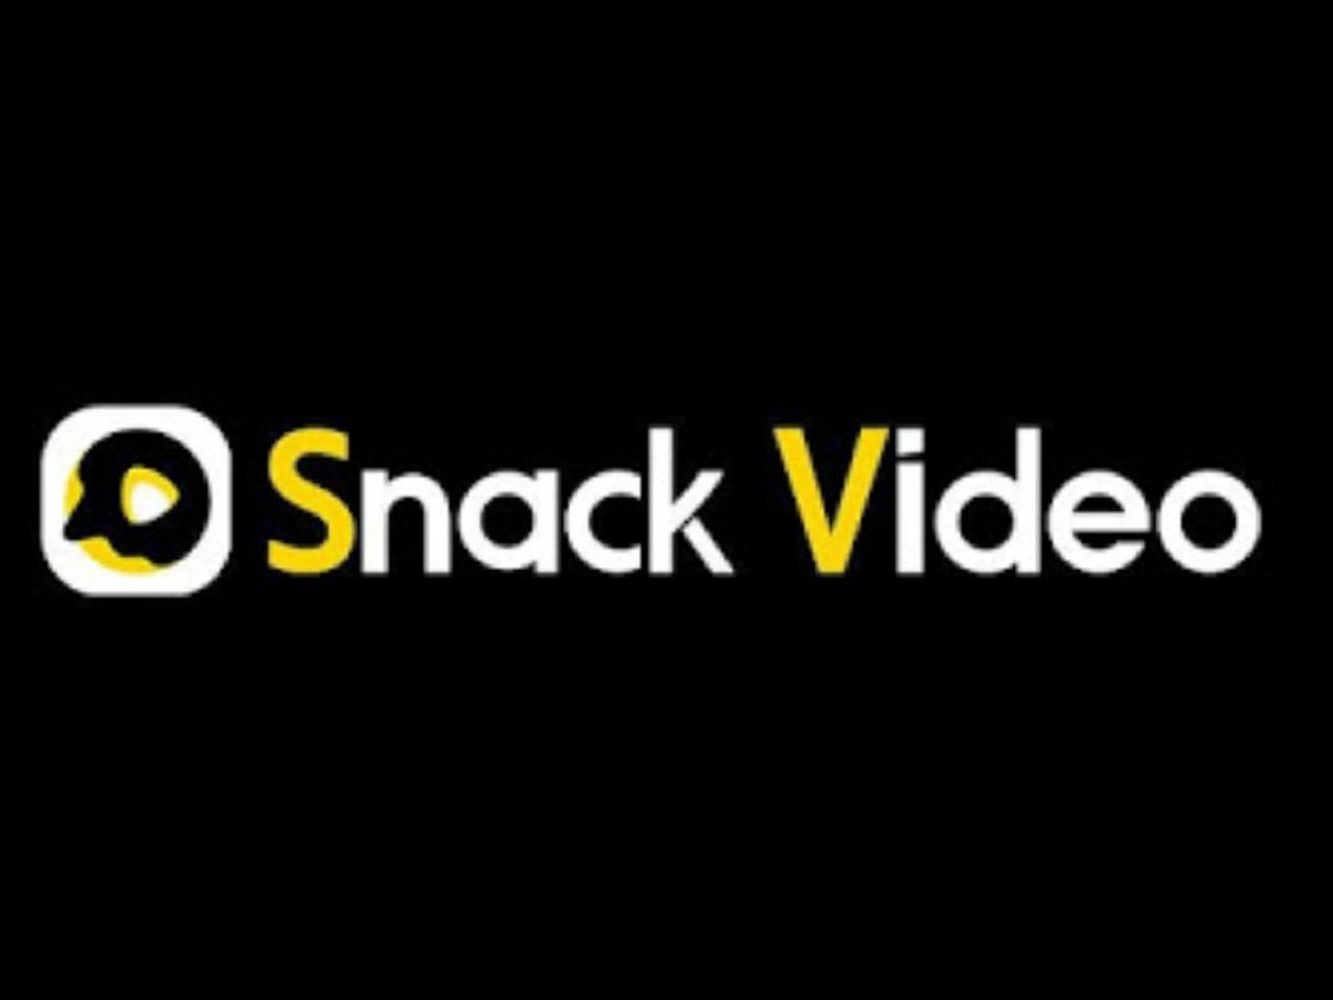 Aplikasi Snack Video – Temukan Fitur dan Cara Menggunakannya